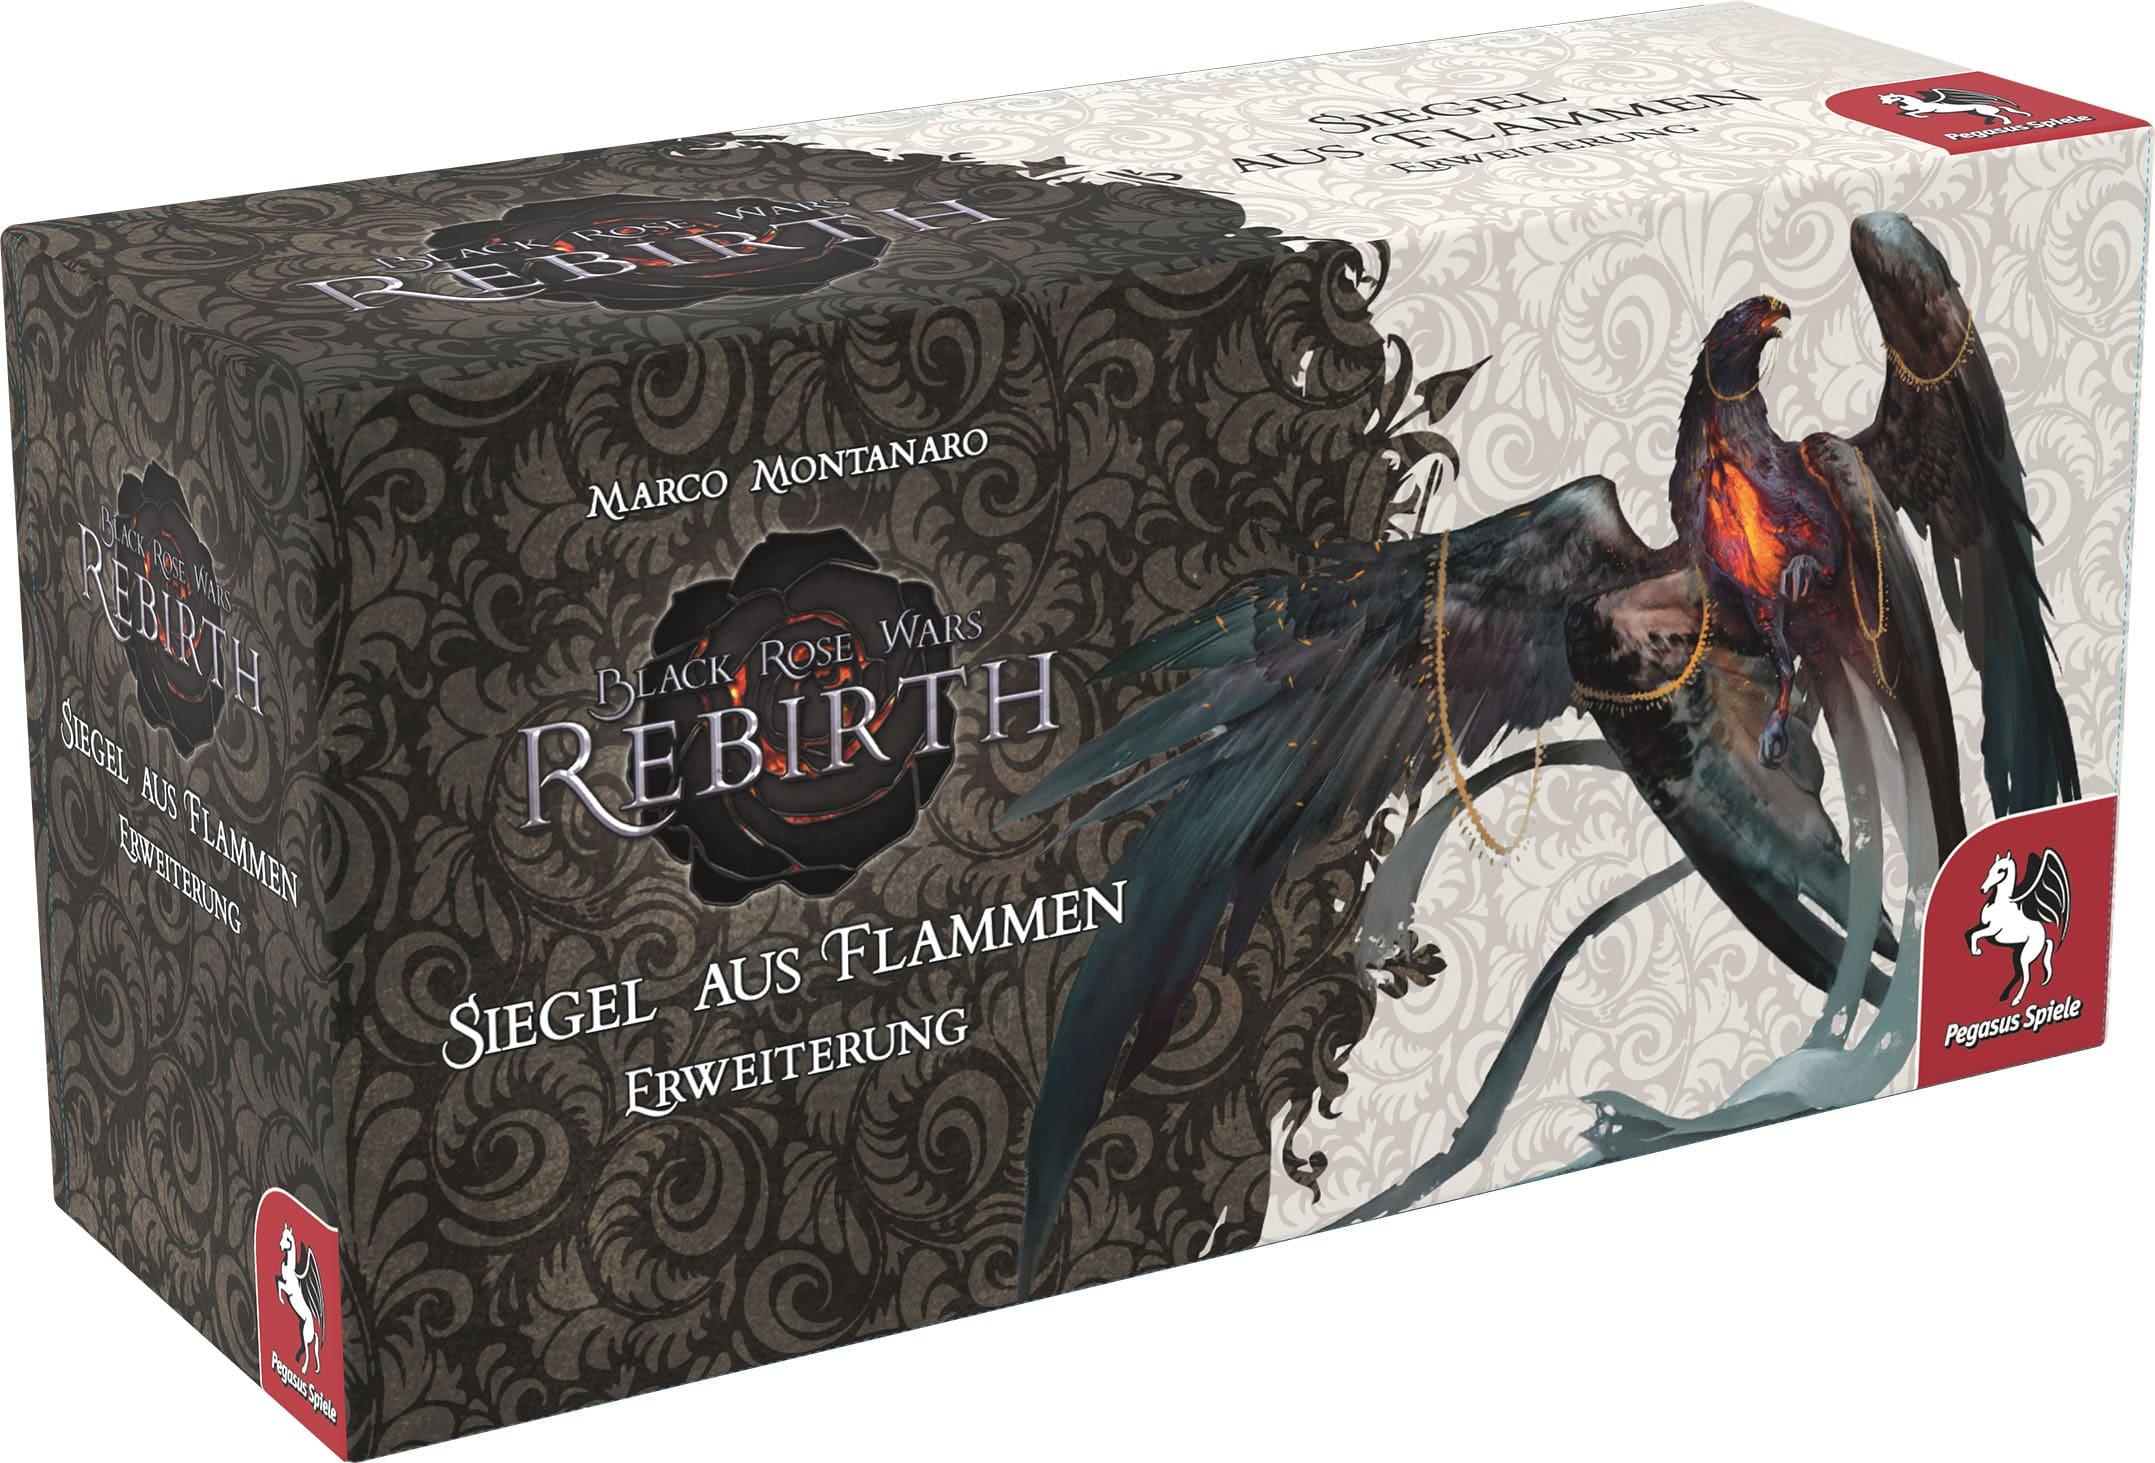 Black Rose Wars - Rebirth: Erweiterung Siegel aus Flammen